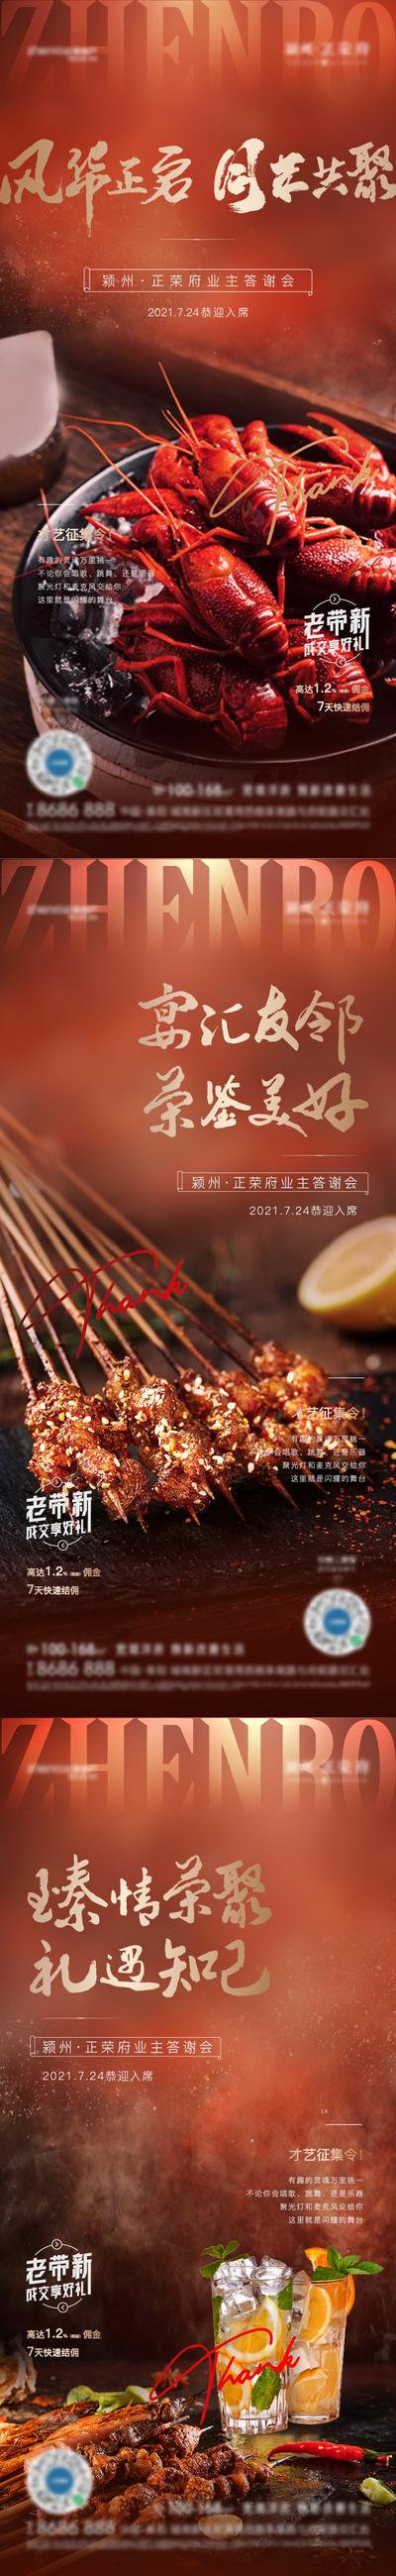 南门网 海报 房地产 龙虾 烧烤 美食节 暖场 活动 系列